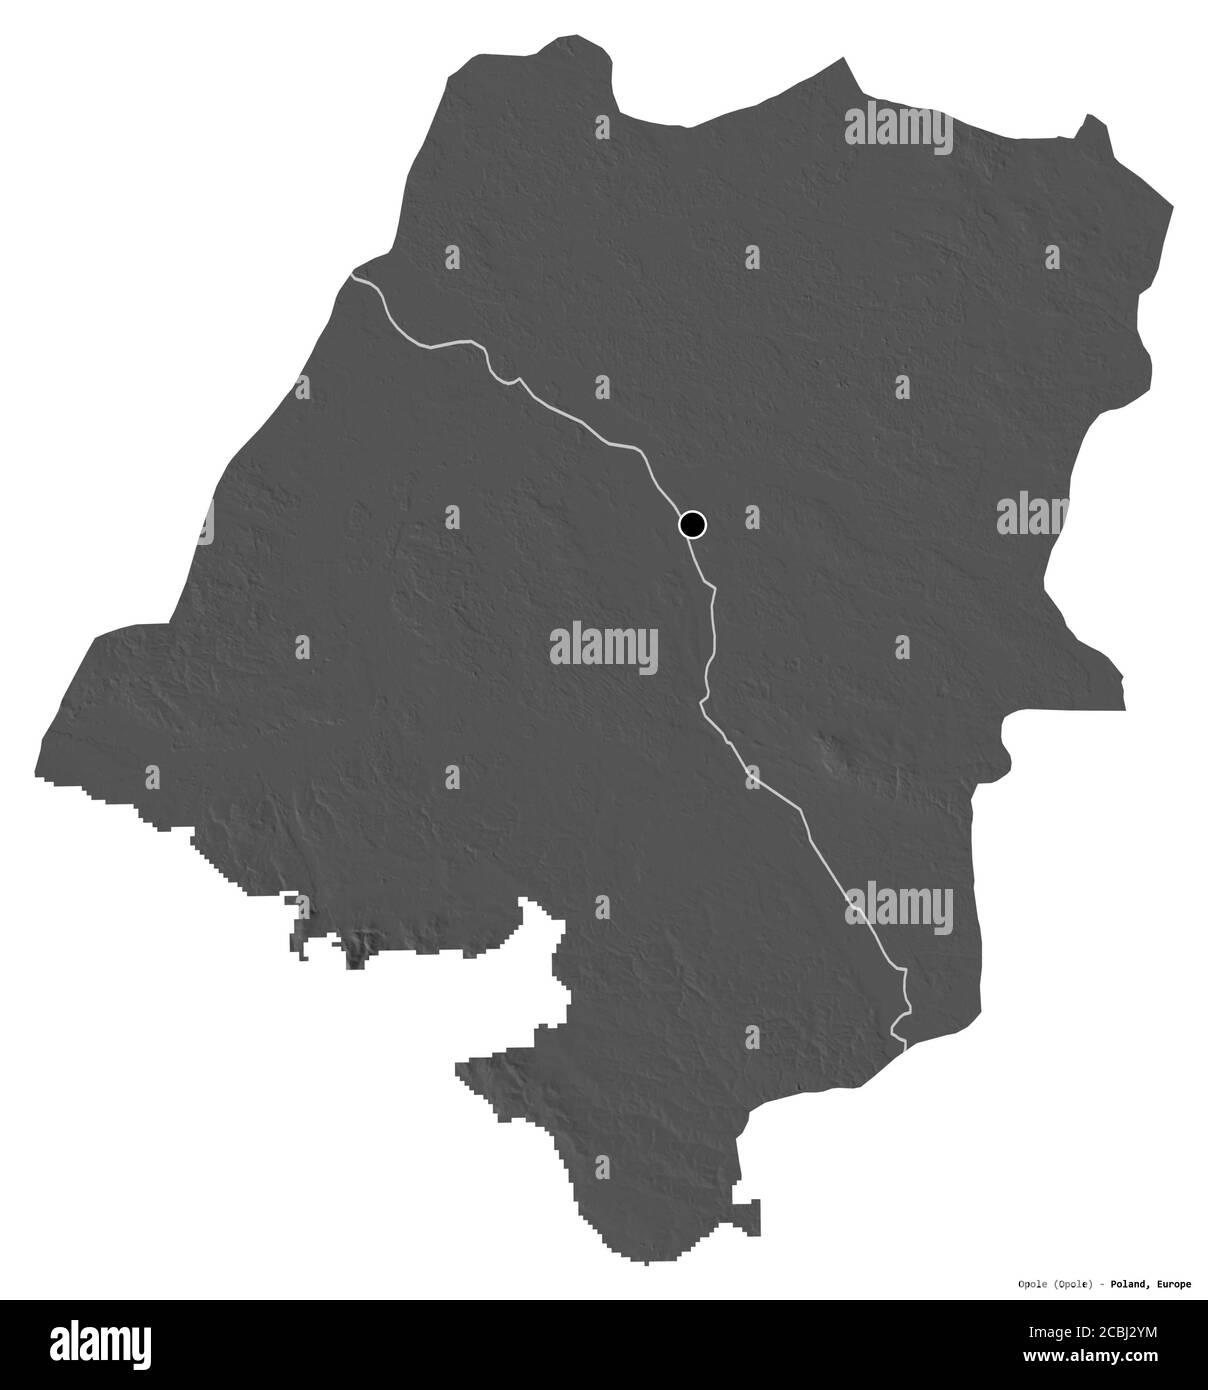 Forme d'Opole, voïvodeship de Pologne, avec sa capitale isolée sur fond blanc. Carte d'élévation à deux niveaux. Rendu 3D Banque D'Images